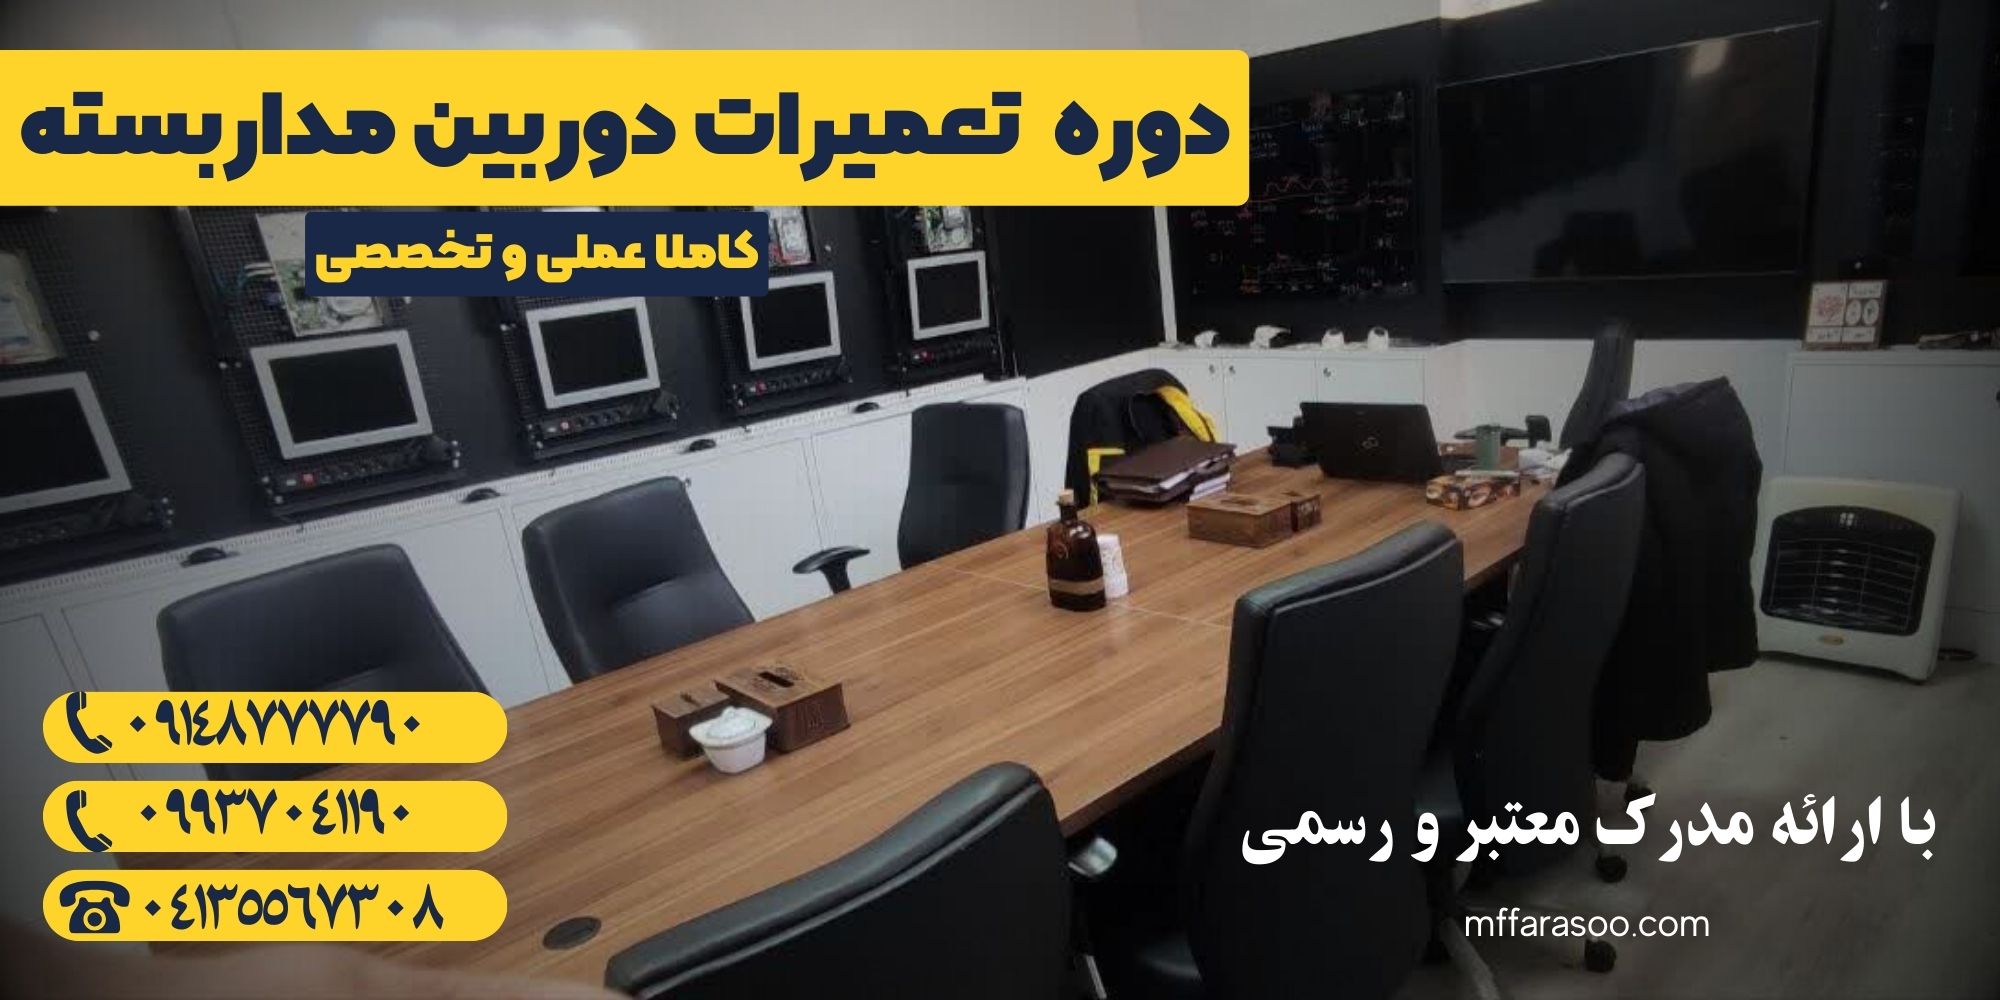 آموزش دوربین مداربسته در تبریز